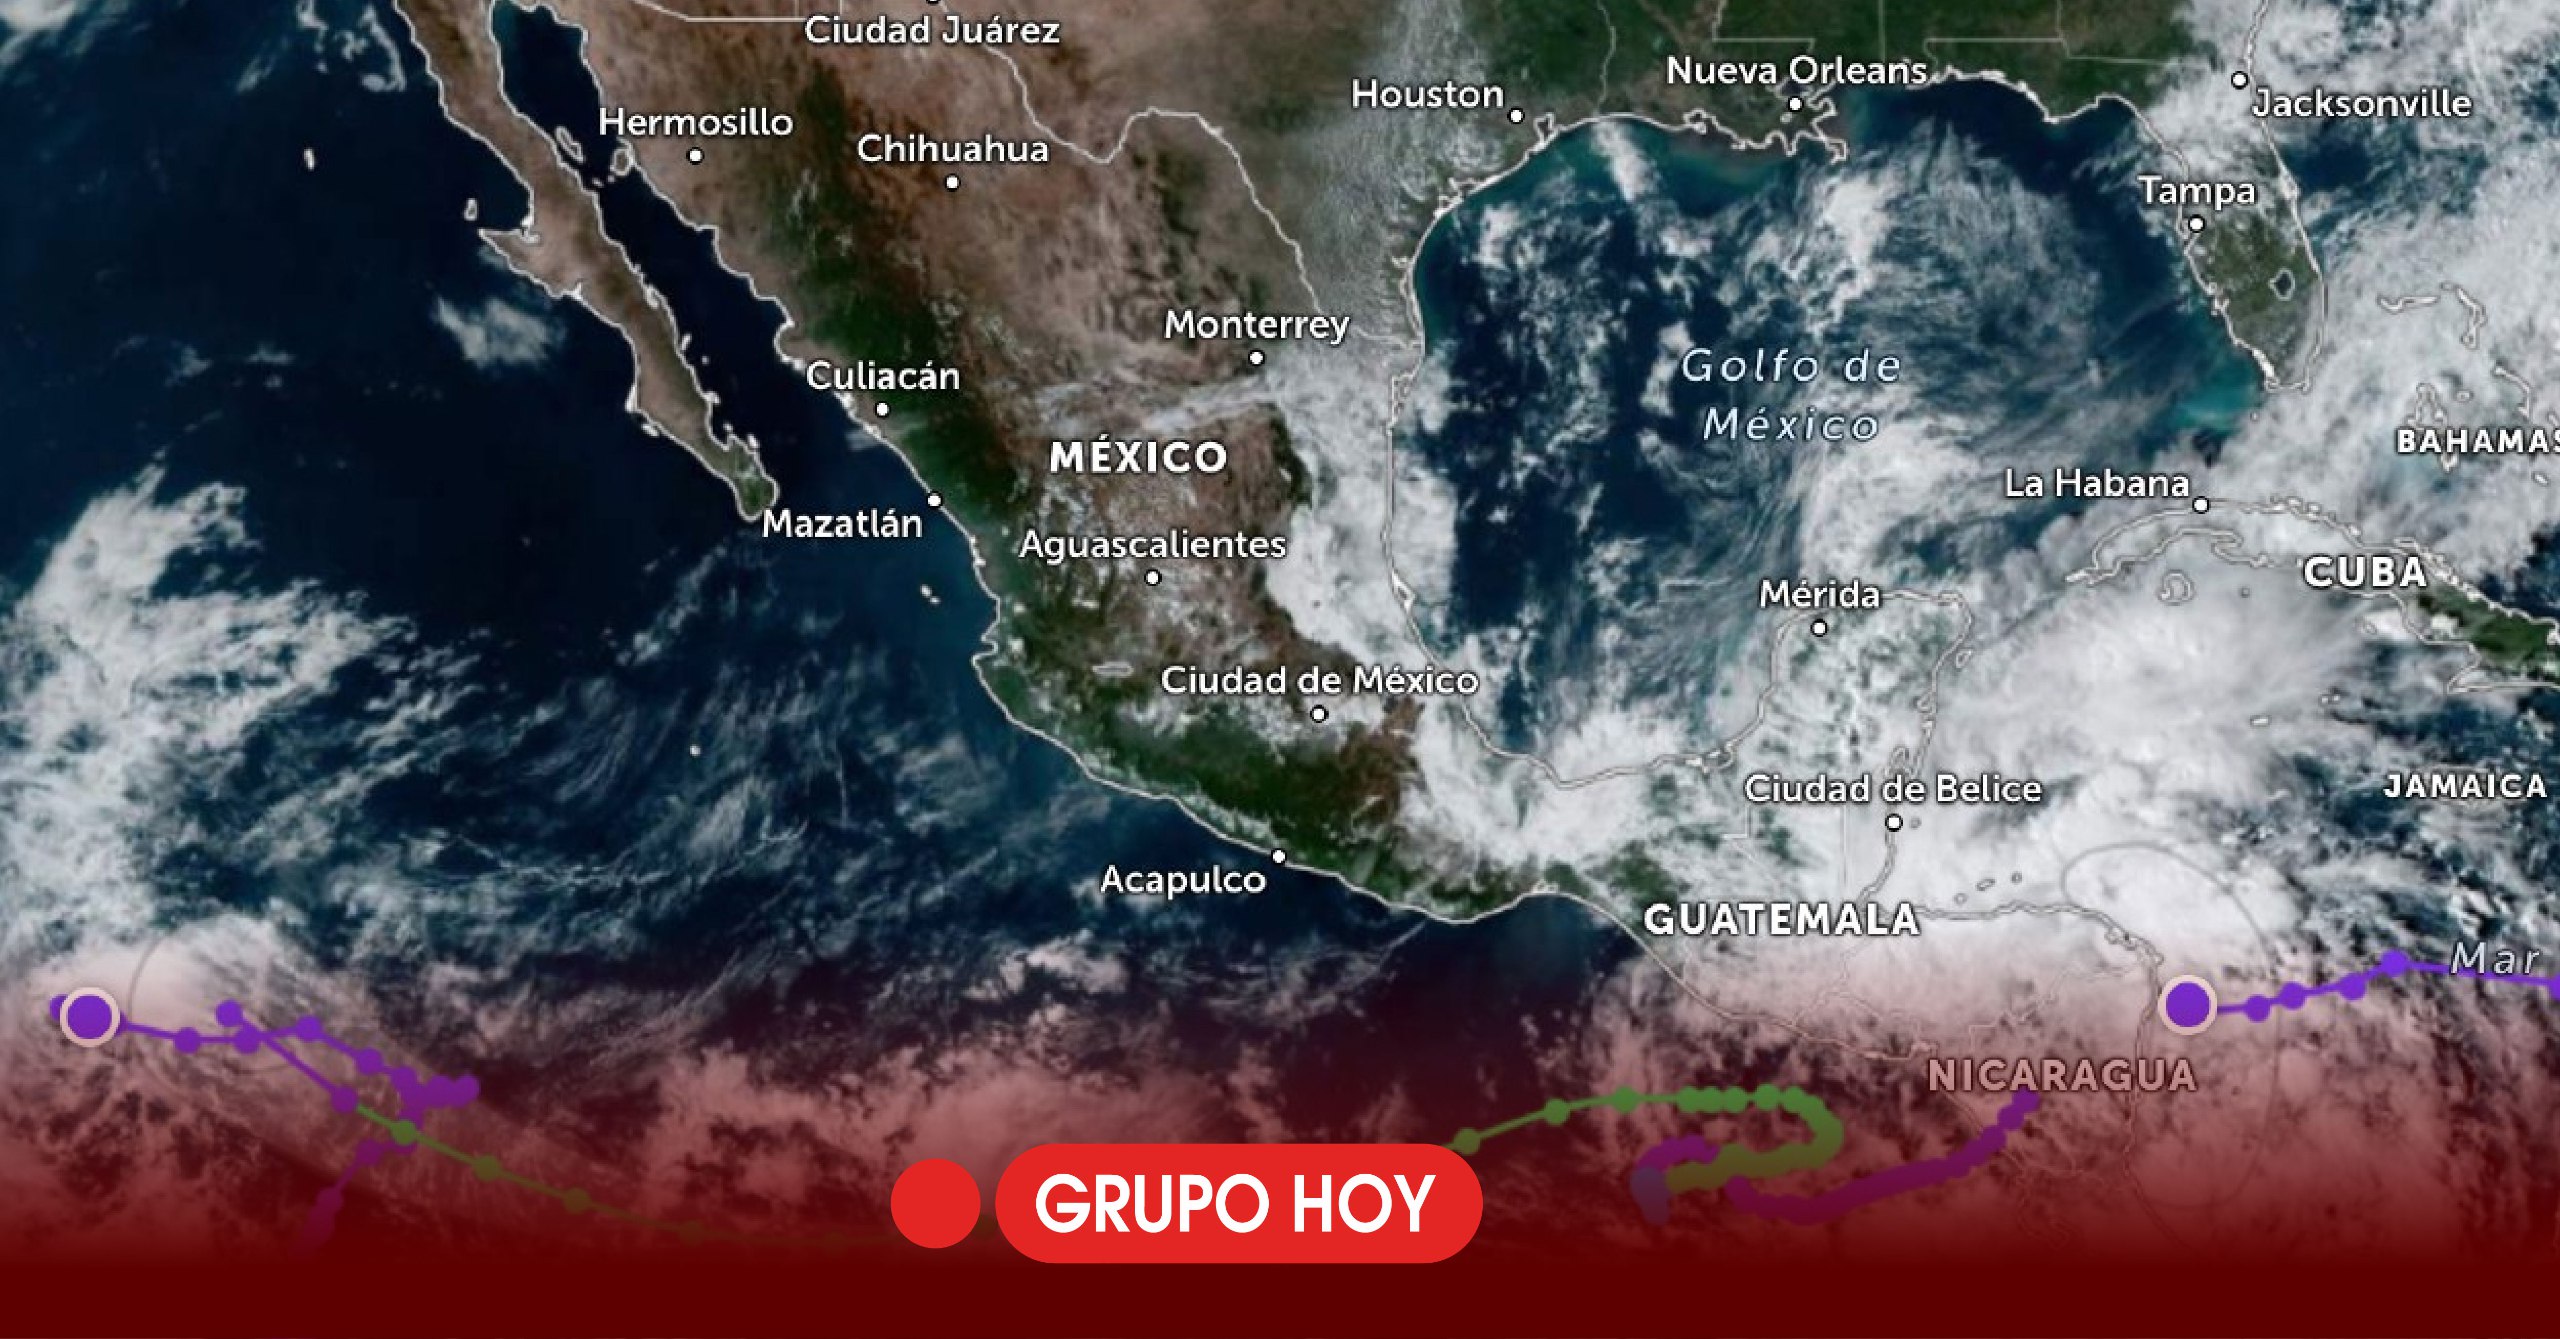 ¡Alerta!: Hidalgo en riesgo de inundaciones y deslizamientos ante lluvias torrenciales